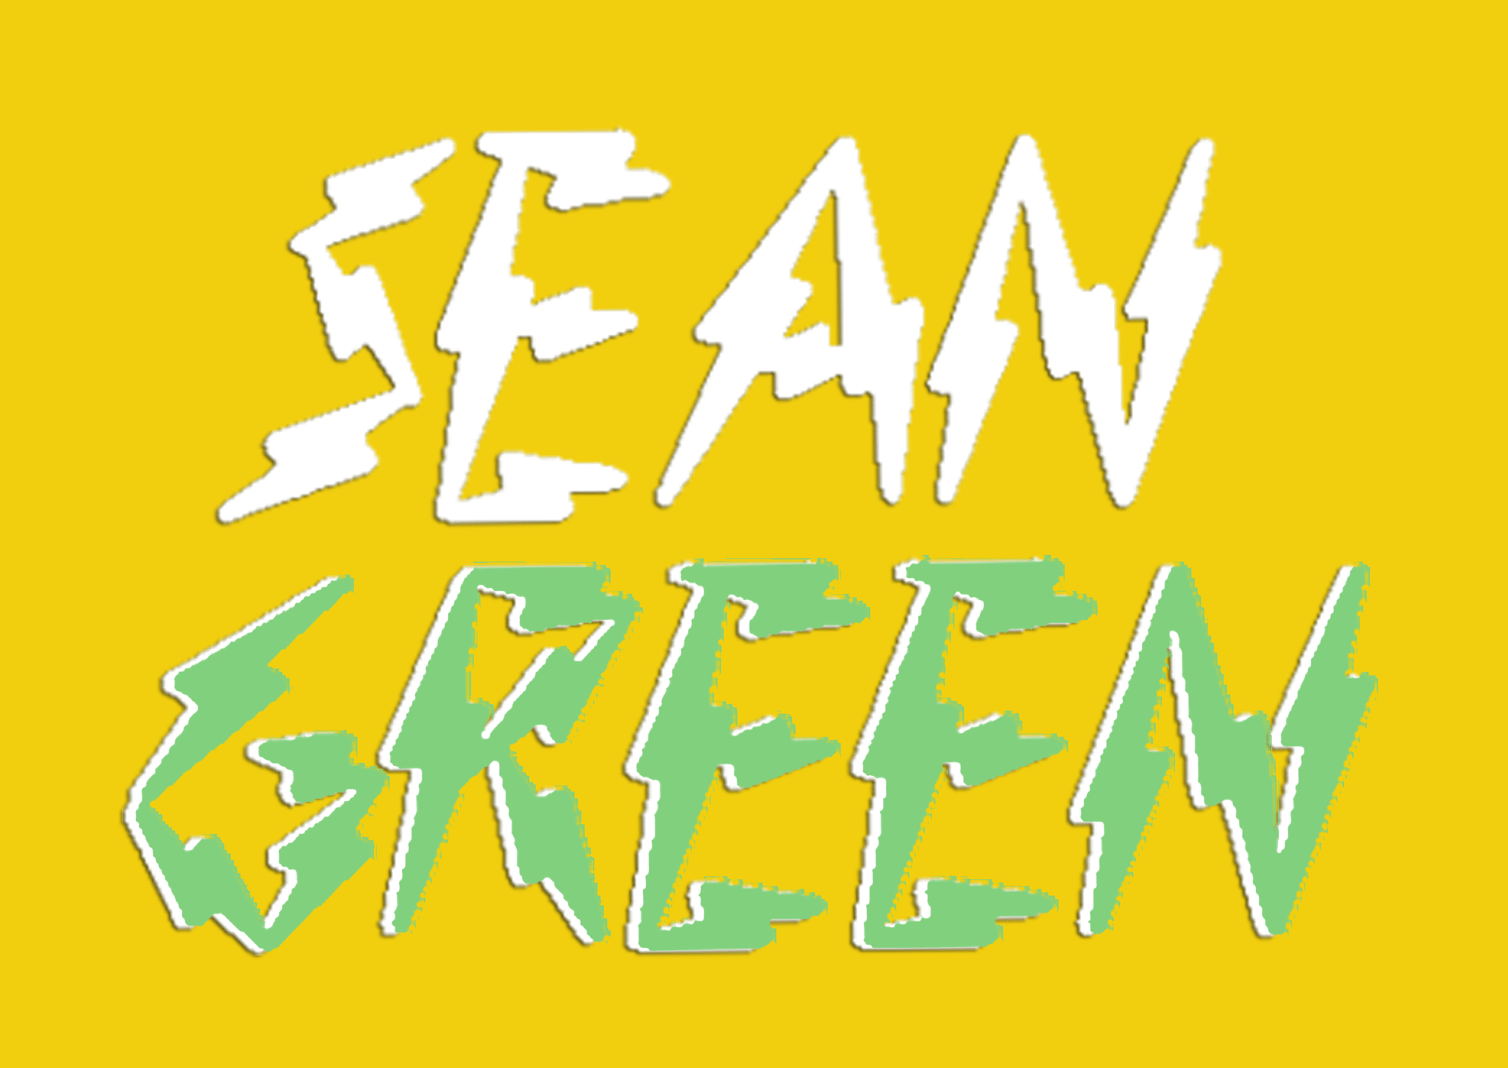 Sean Green